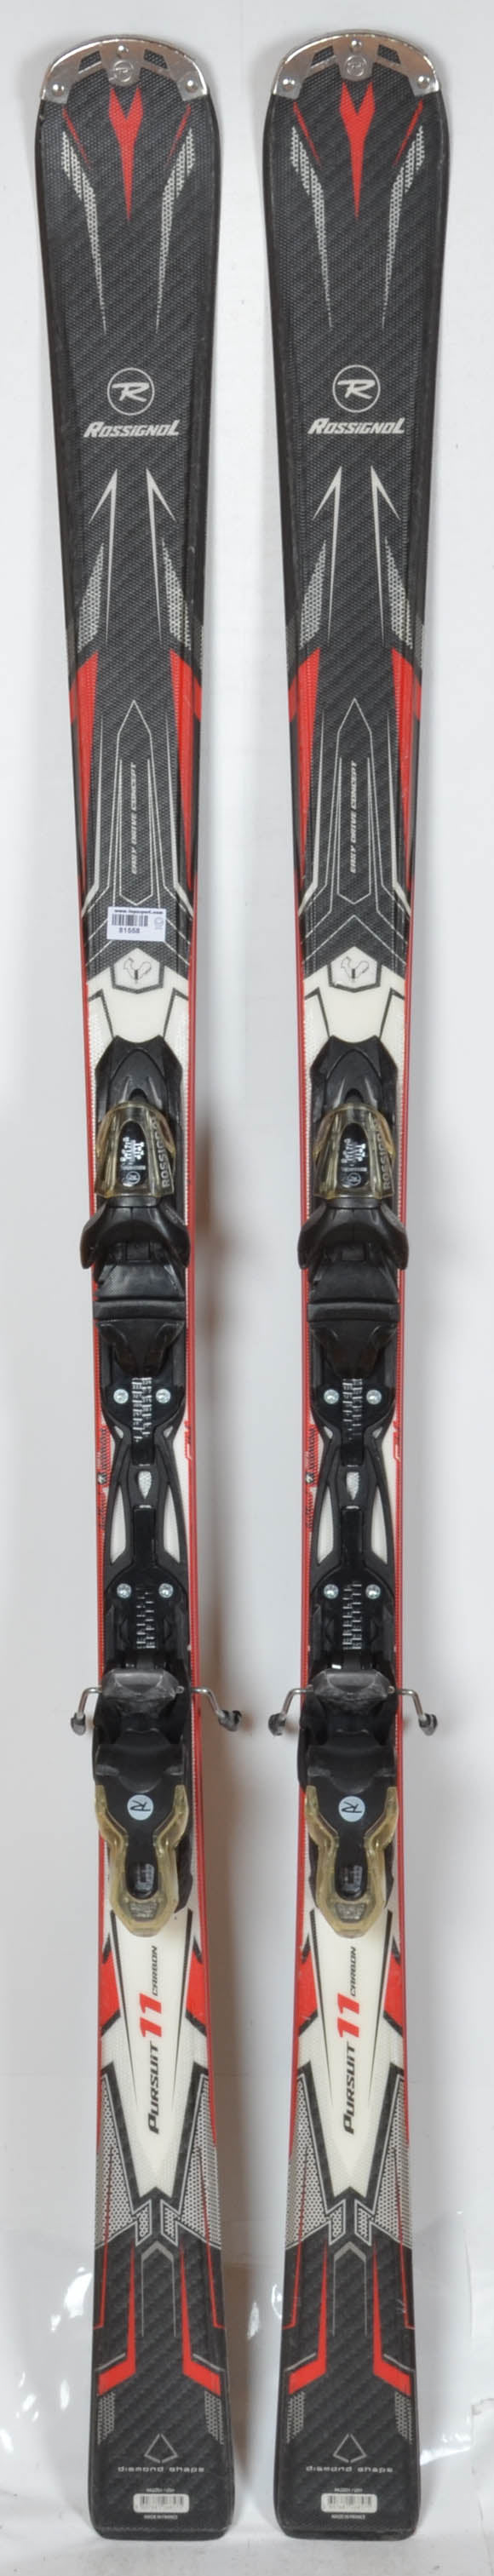 Rossignol PURSUIT 11 CA - skis d'occasion